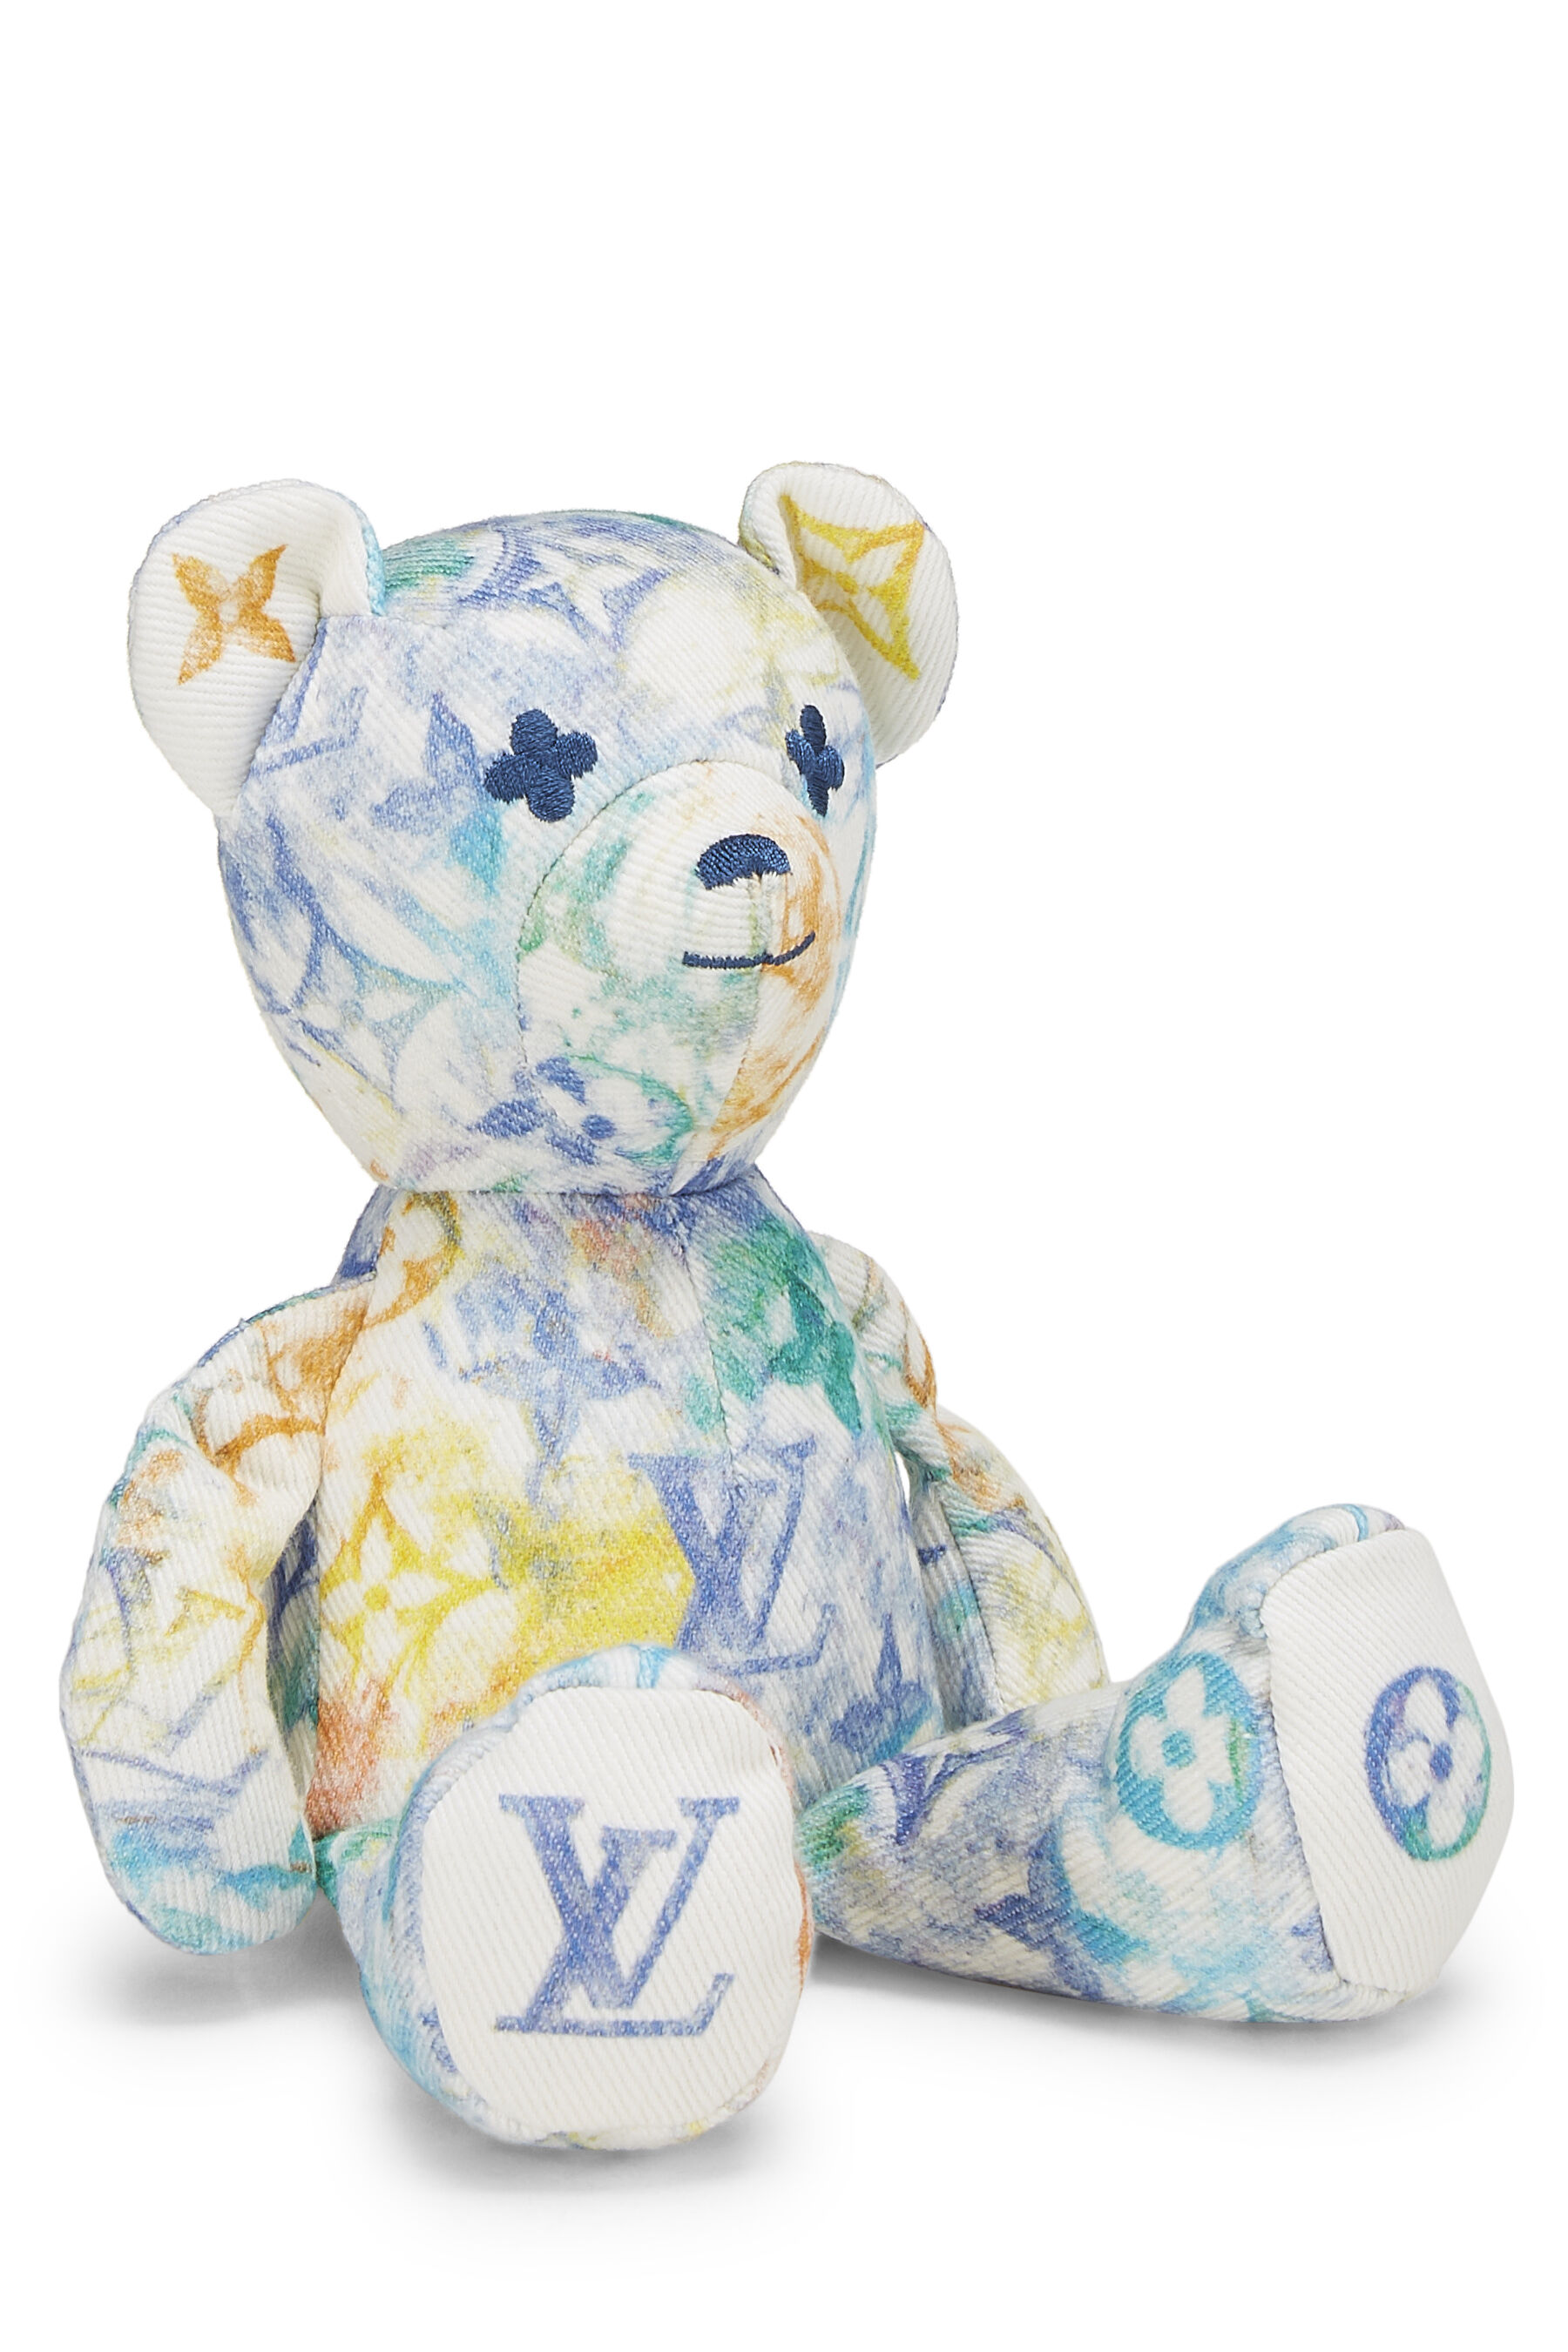 Louis Vuitton Virgil Abloh Unicef Pastels Watercolor Doudou Teddy